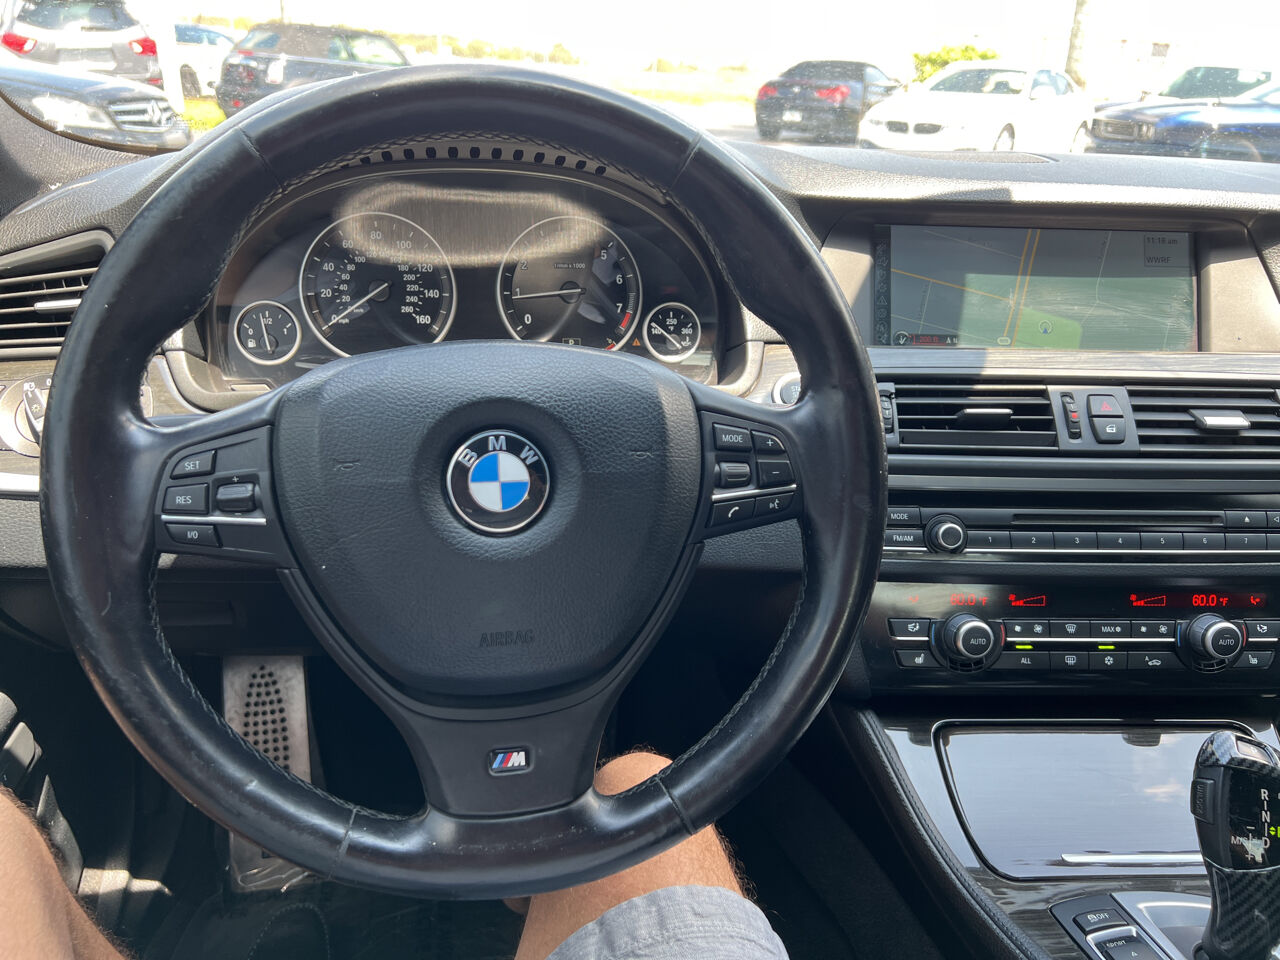 2012 BMW 5 Series Sedan - $13,900